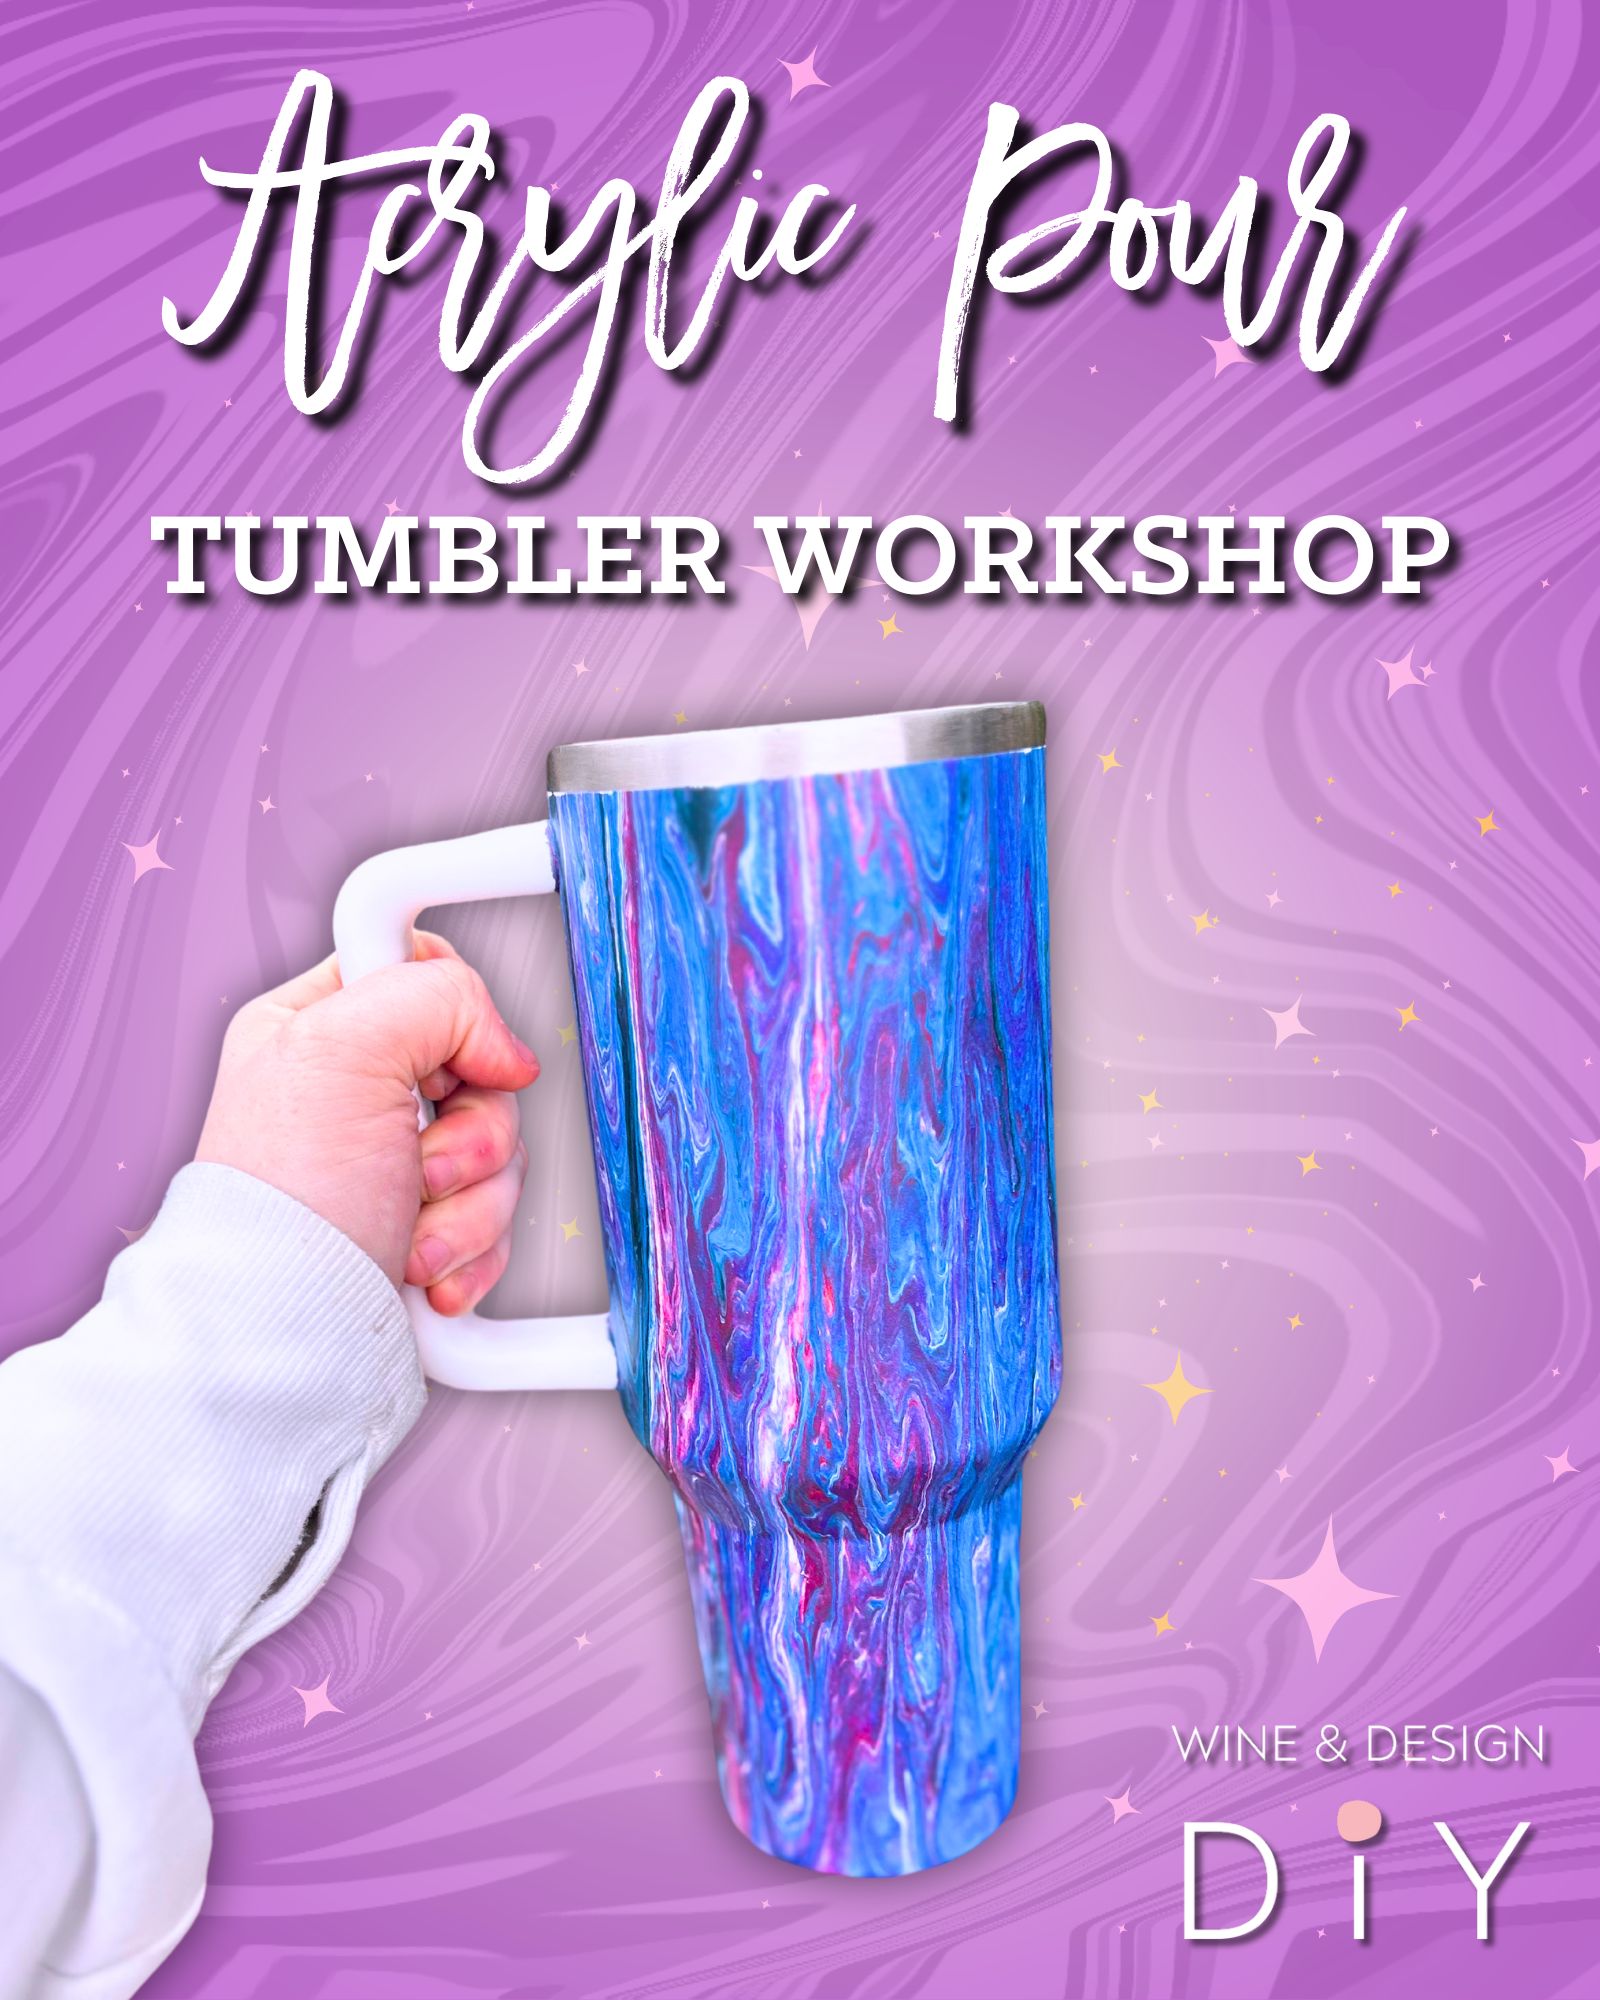 Acrylic Pour Tumbler Workshop!